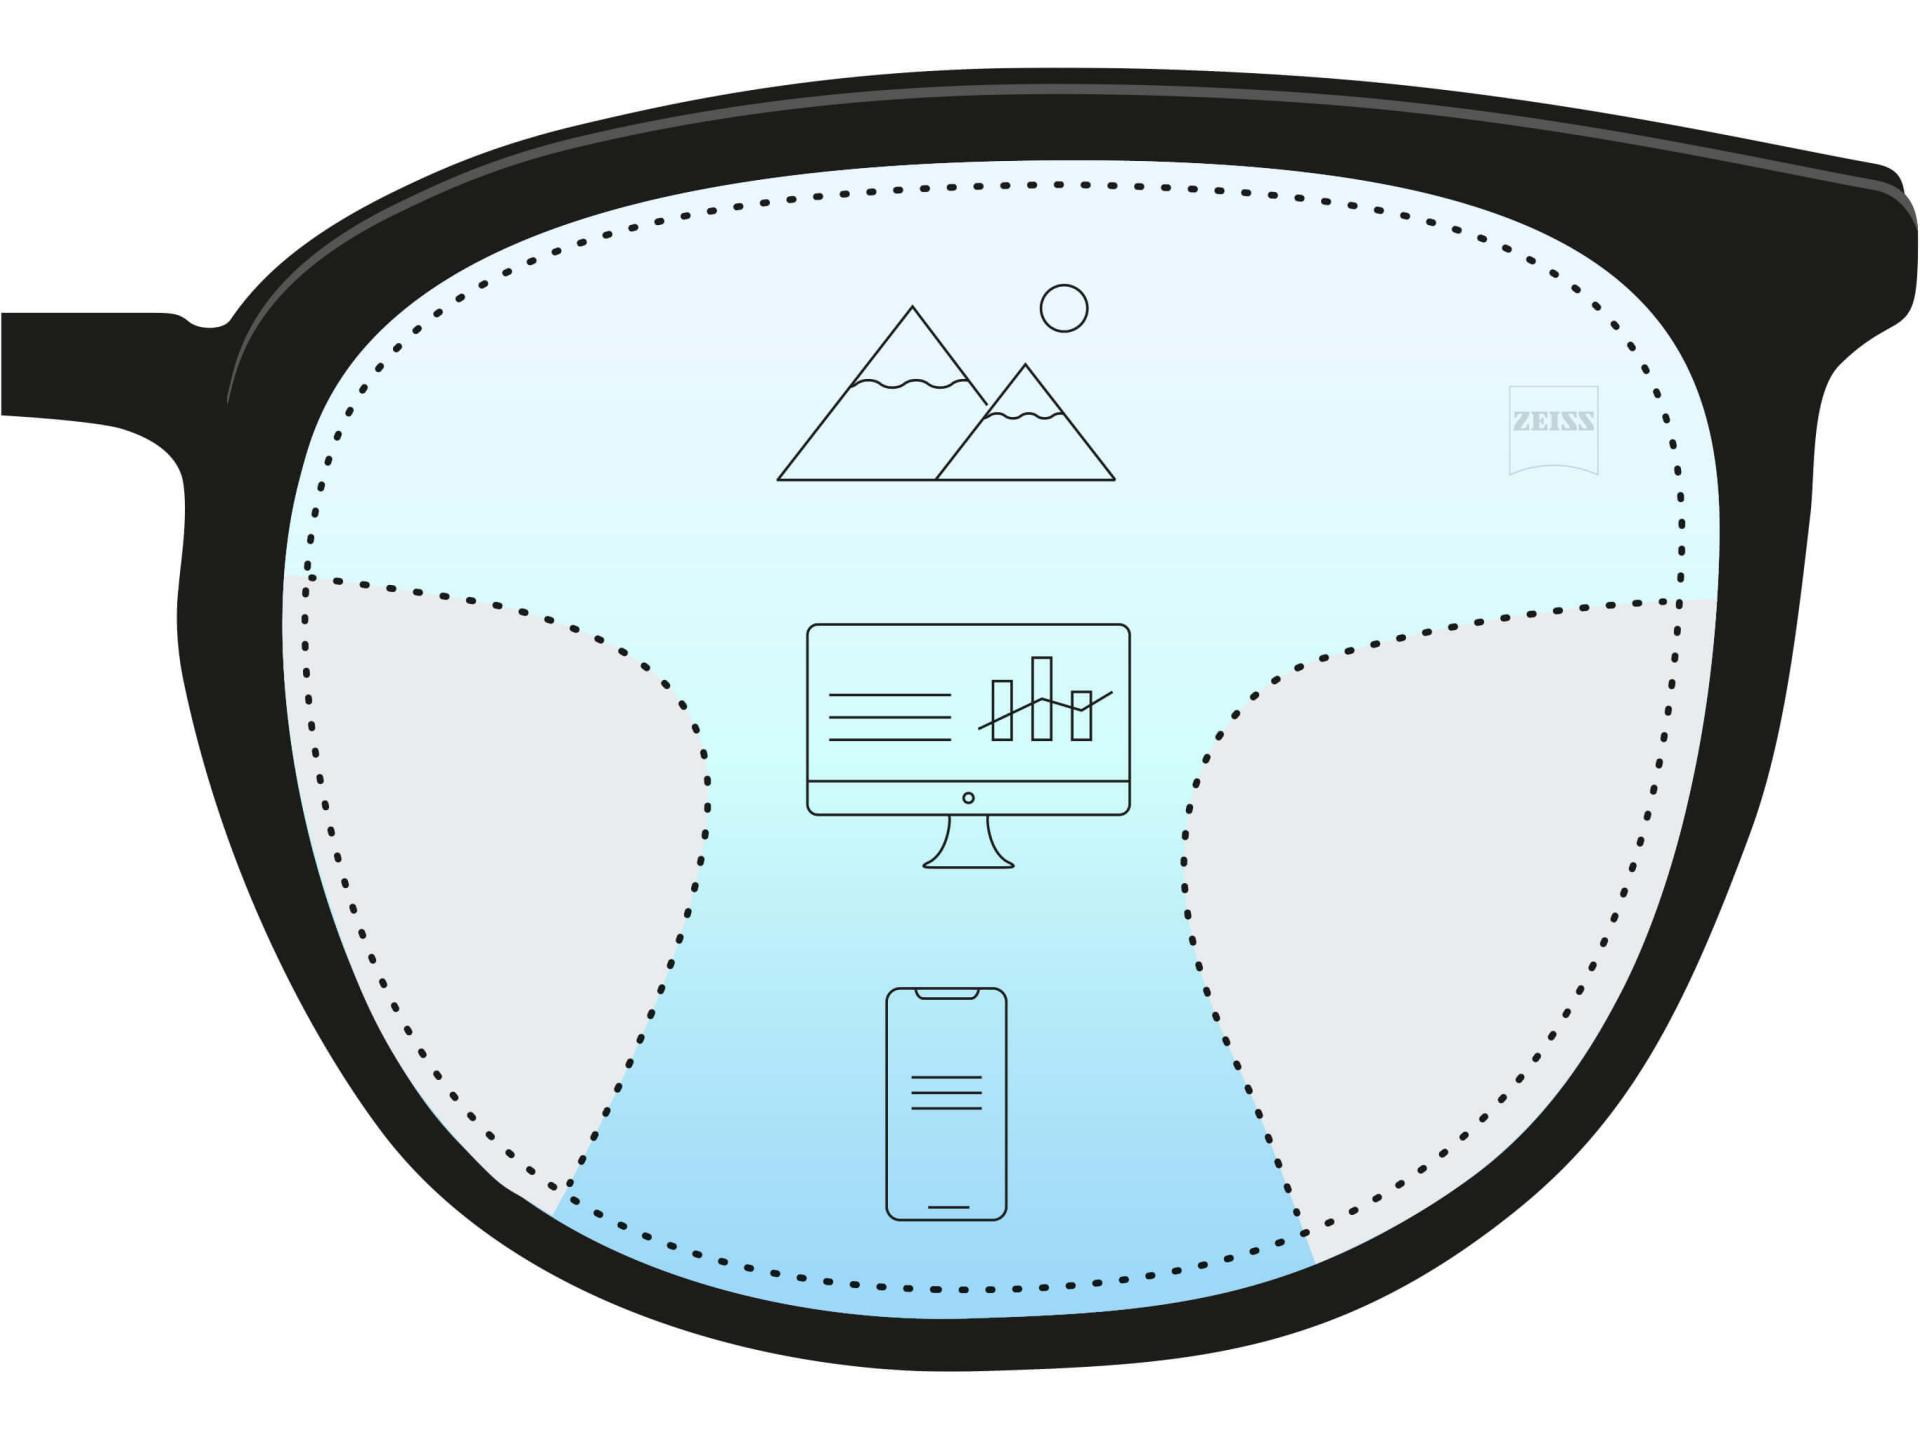 Een illustratie van een progressief brillenglas met drie verschillende zones. Drie pictogrammen en een kleurverloop geven drie sterktes aan voor verschillende afstanden - dichtbij, middellang en veraf.